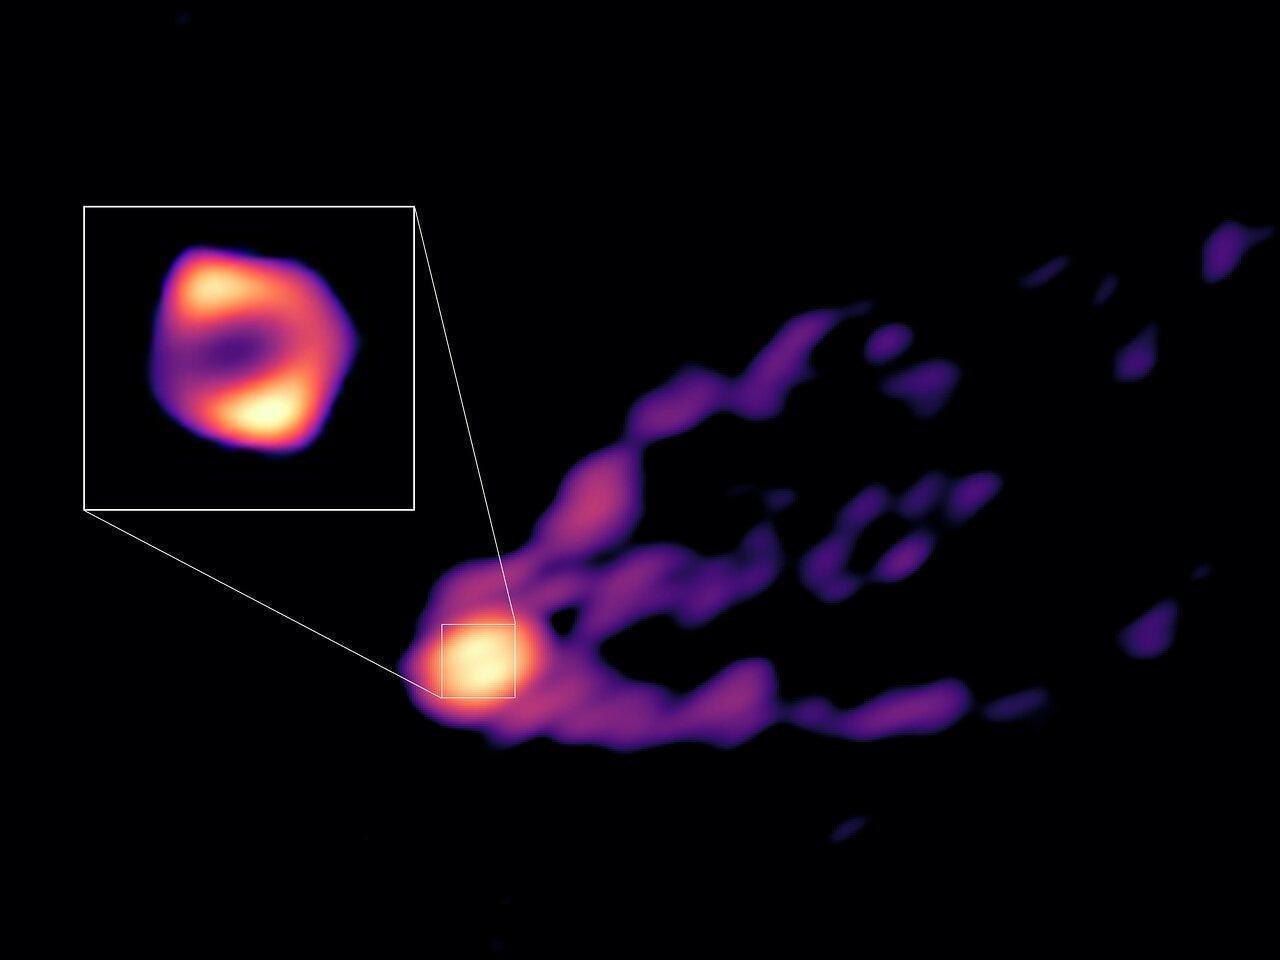 超大質量ブラックホールとそれが発するプラズマジェットを同時に撮影